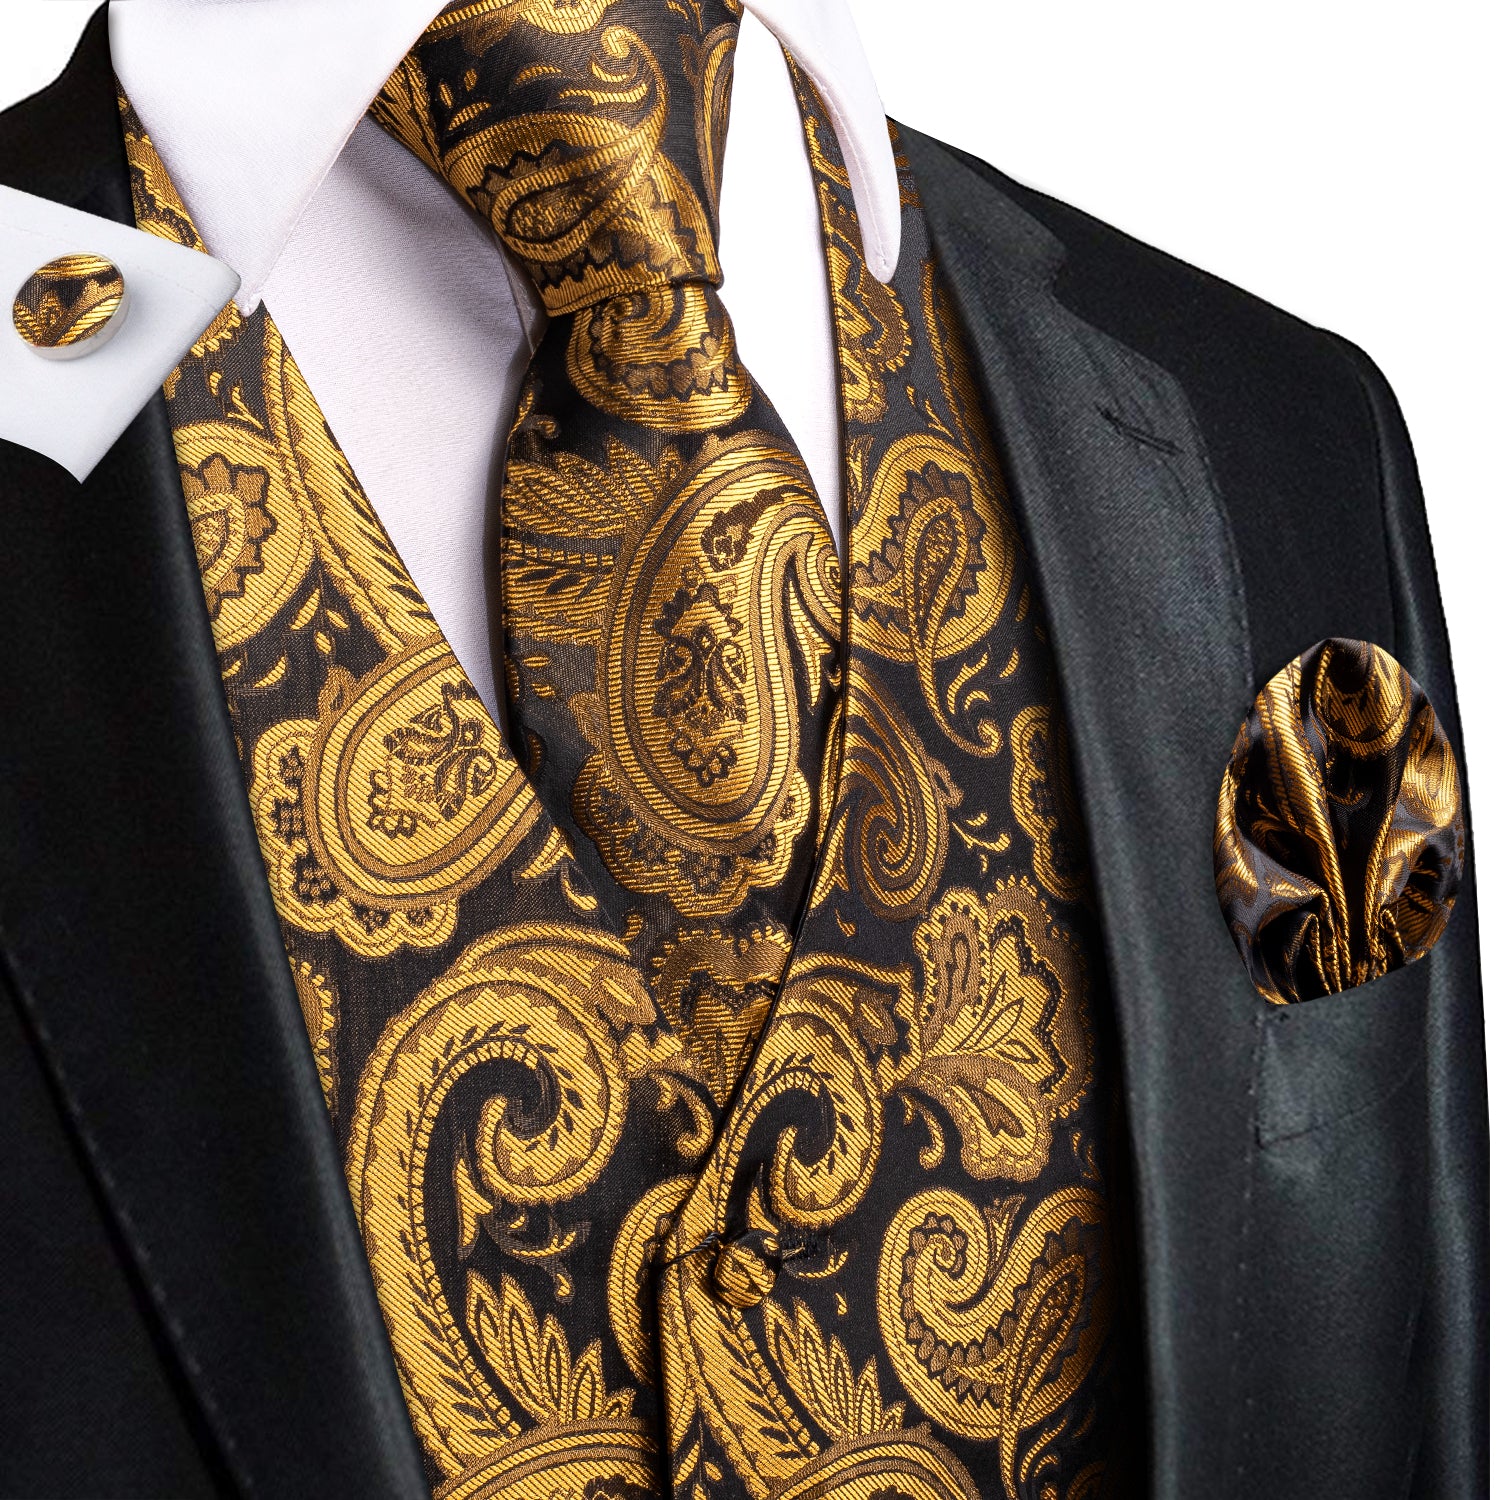 Luxury Golden Black Paisley Silk Men's Vest Hanky Cufflinks Tie Set Waistcoat Suit Set